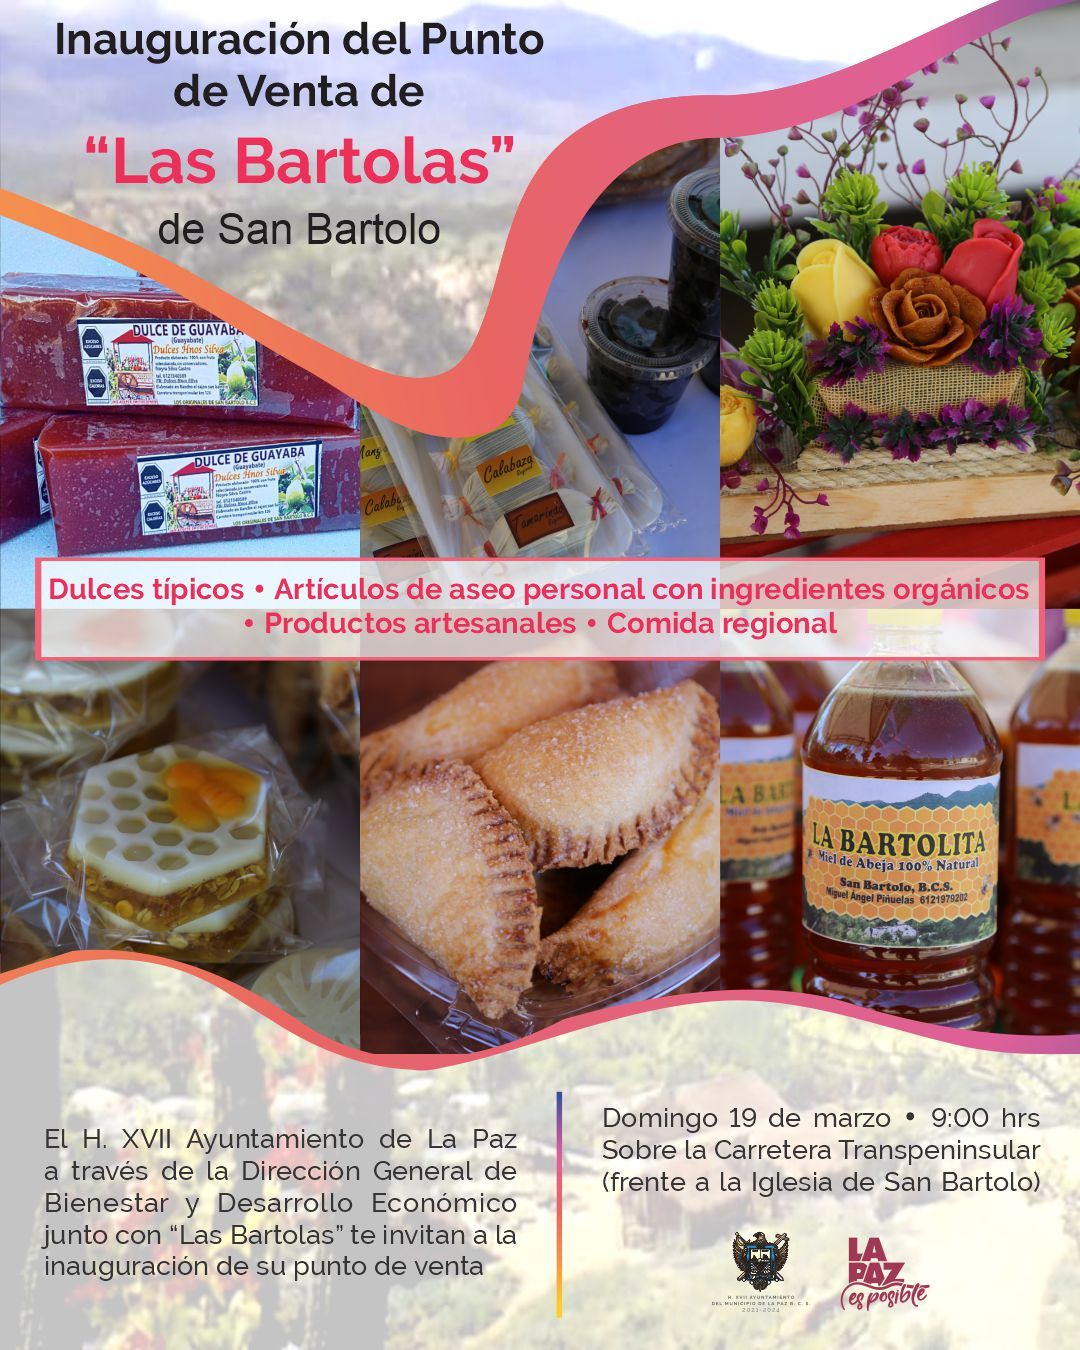 Invitan a la inauguración del Punto de Venta de Las Bartolas